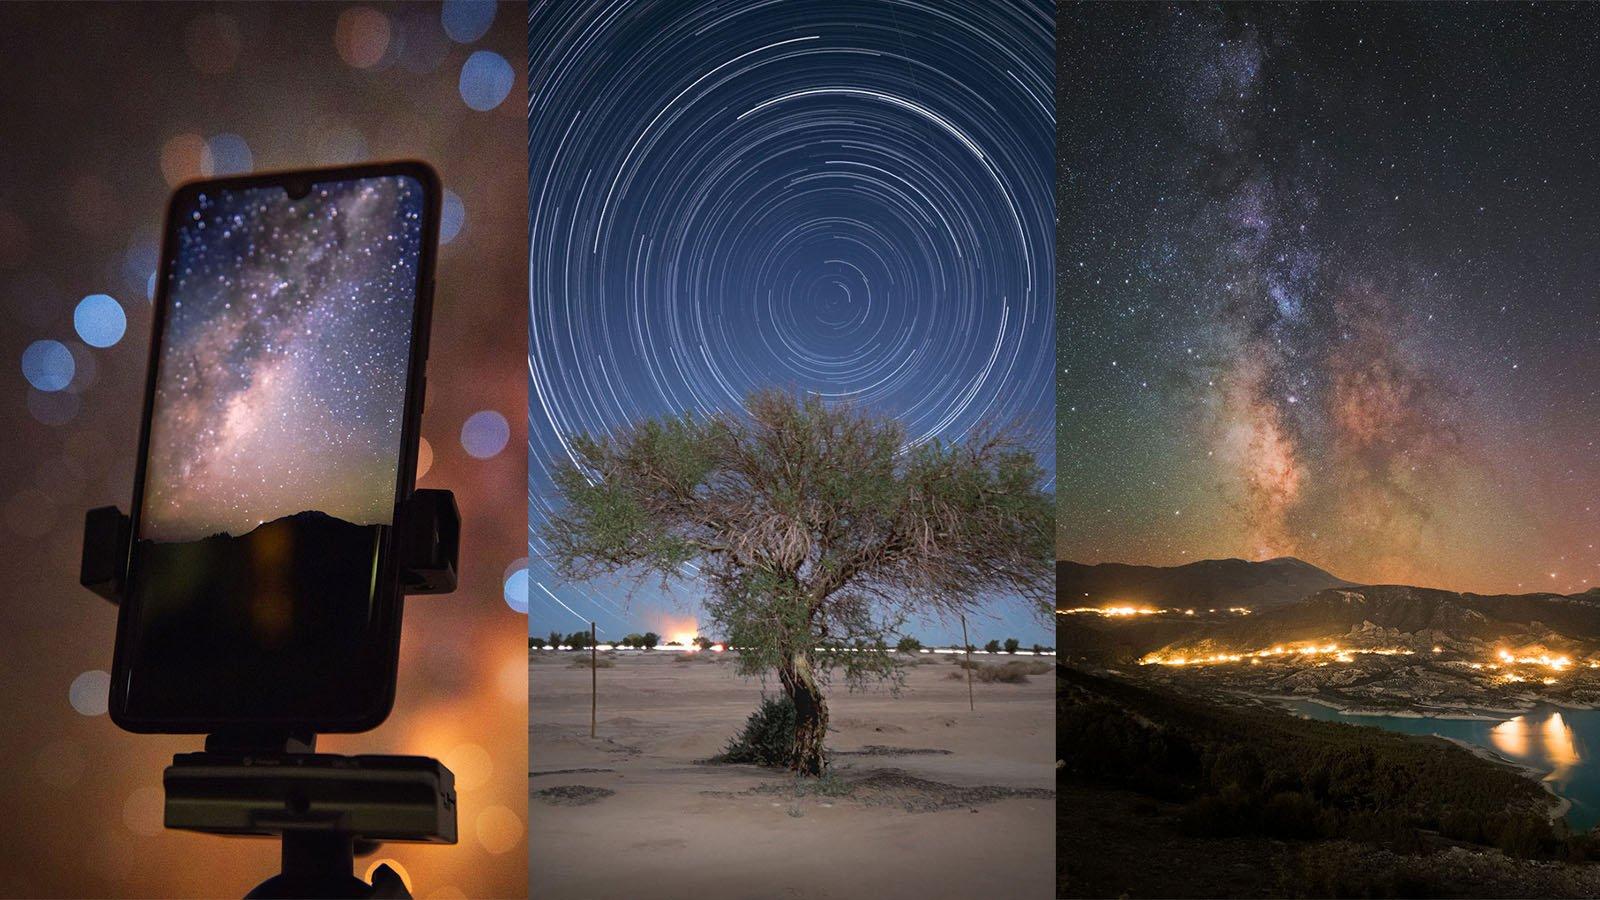 Điện thoại chụp ảnh thiên văn trời đêm Chụp ảnh thiên văn trời đêm không còn là điều khó khăn với điện thoại thông minh của bạn. Với tính năng chụp ảnh thiên văn, bạn có thể dễ dàng bắt được khoảnh khắc đẹp của vũ trụ mỗi đêm. Hãy khám phá những bức ảnh tuyệt đẹp được chụp bằng điện thoại chụp ảnh thiên văn và thức sự kinh ngạc với vẻ đẹp huyền bí của vũ trụ.